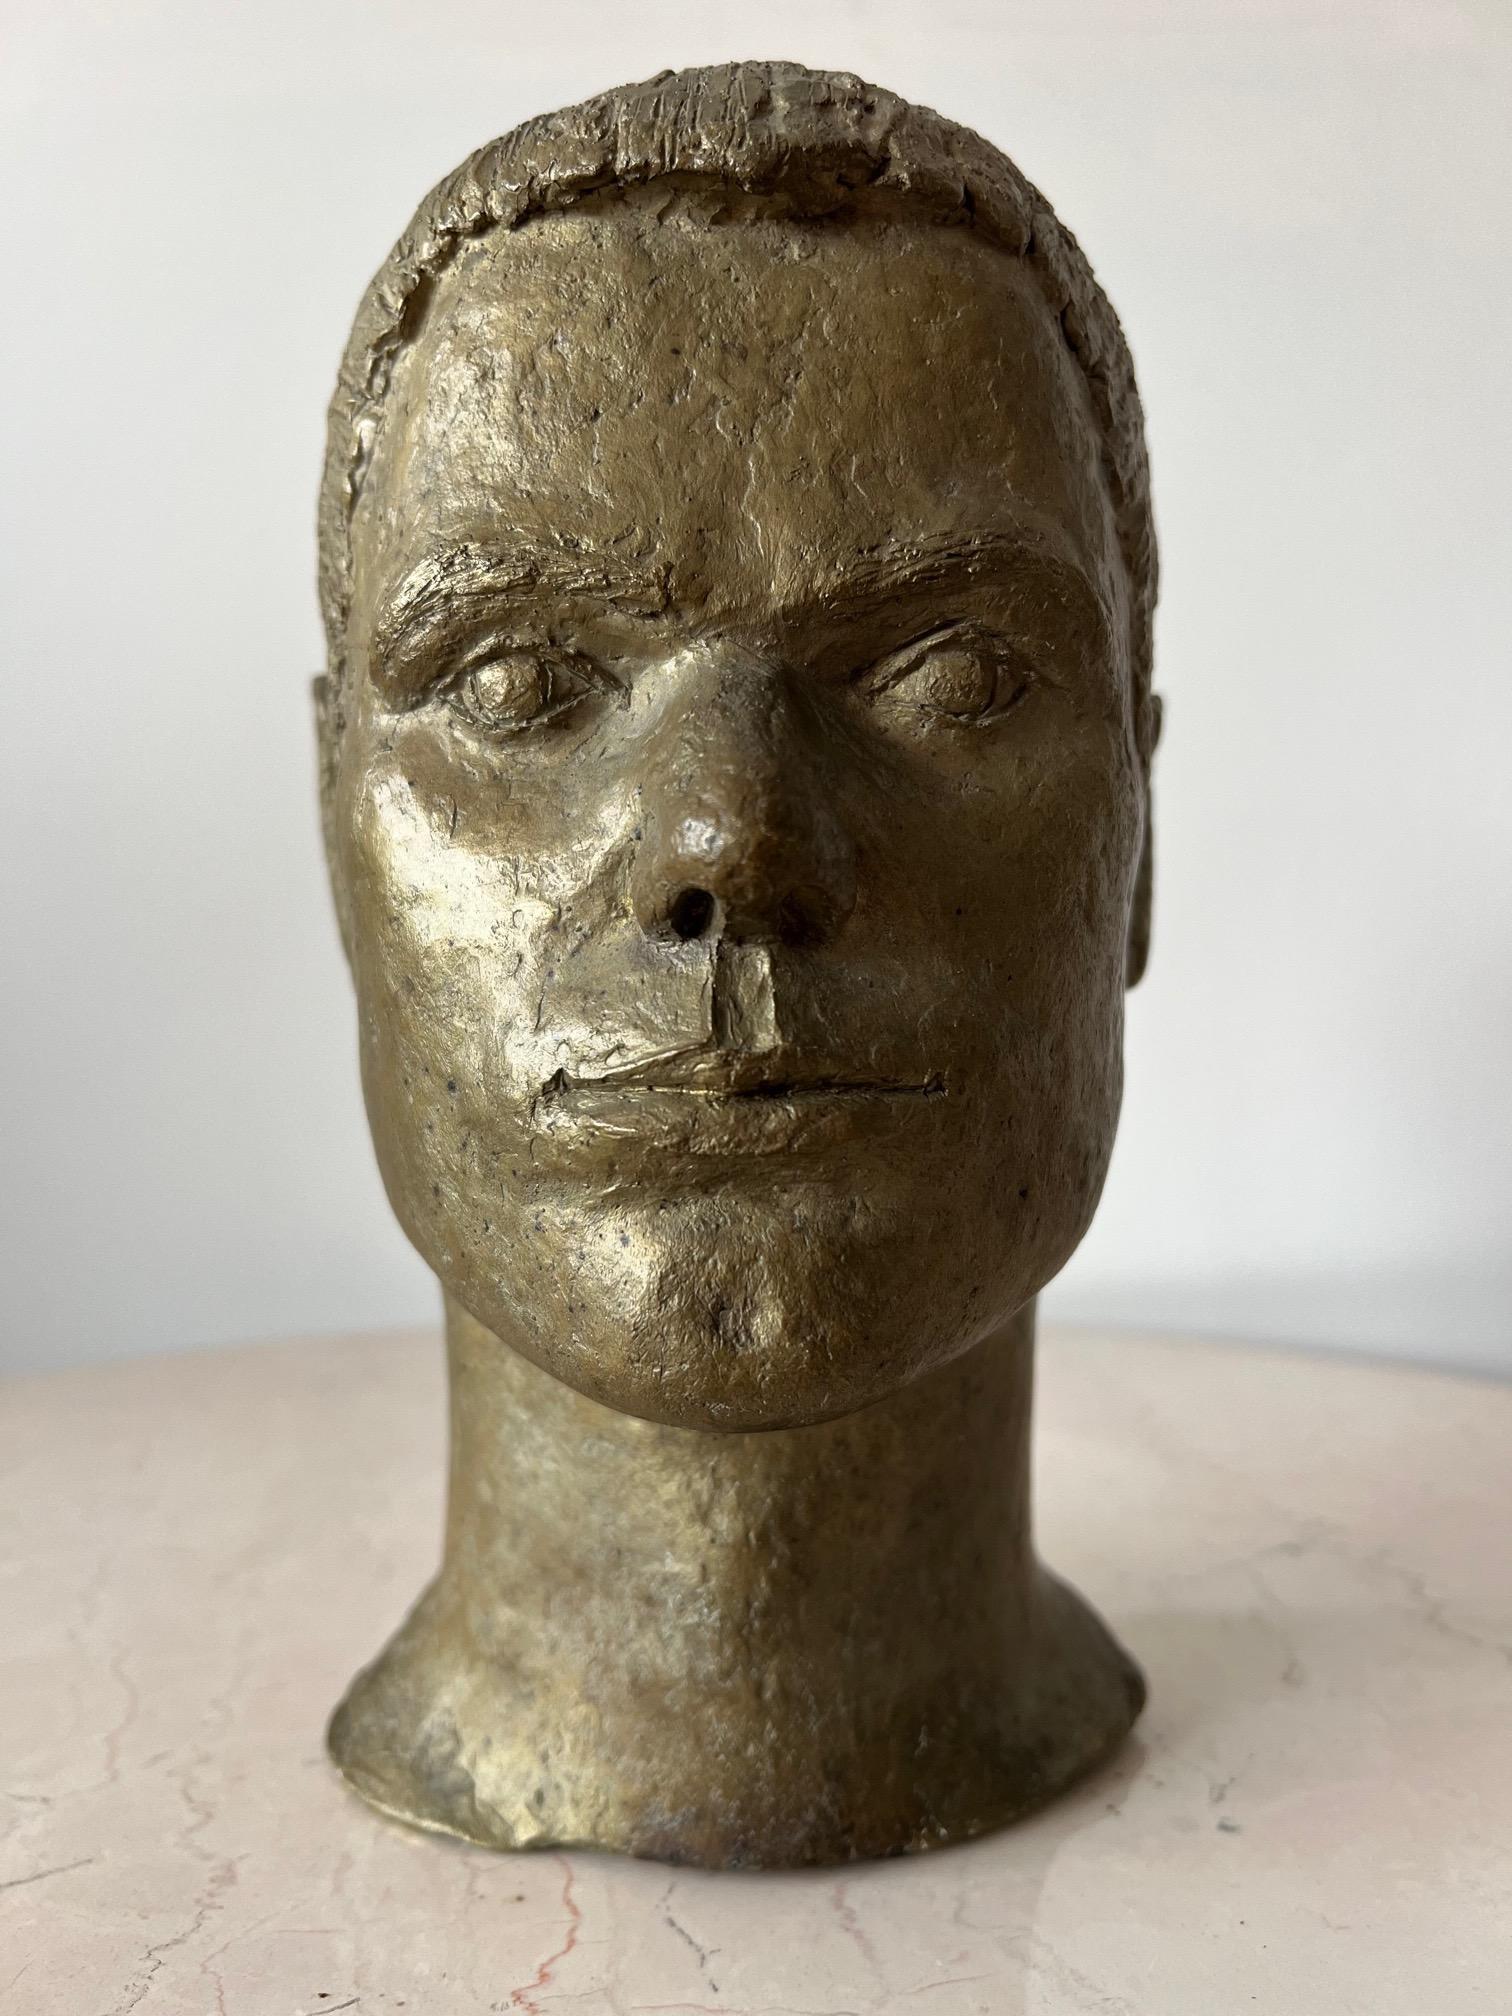 Une sculpture inhabituelle en bronze coulé d'Anne Van Kleeck.  Provenant de la succession de l'artiste.  Une note sur l'artiste :  Anne Van Kleeck était principalement connue pour ses travaux en bronze coulé et en céramique. Elle a fréquenté l'Ohio